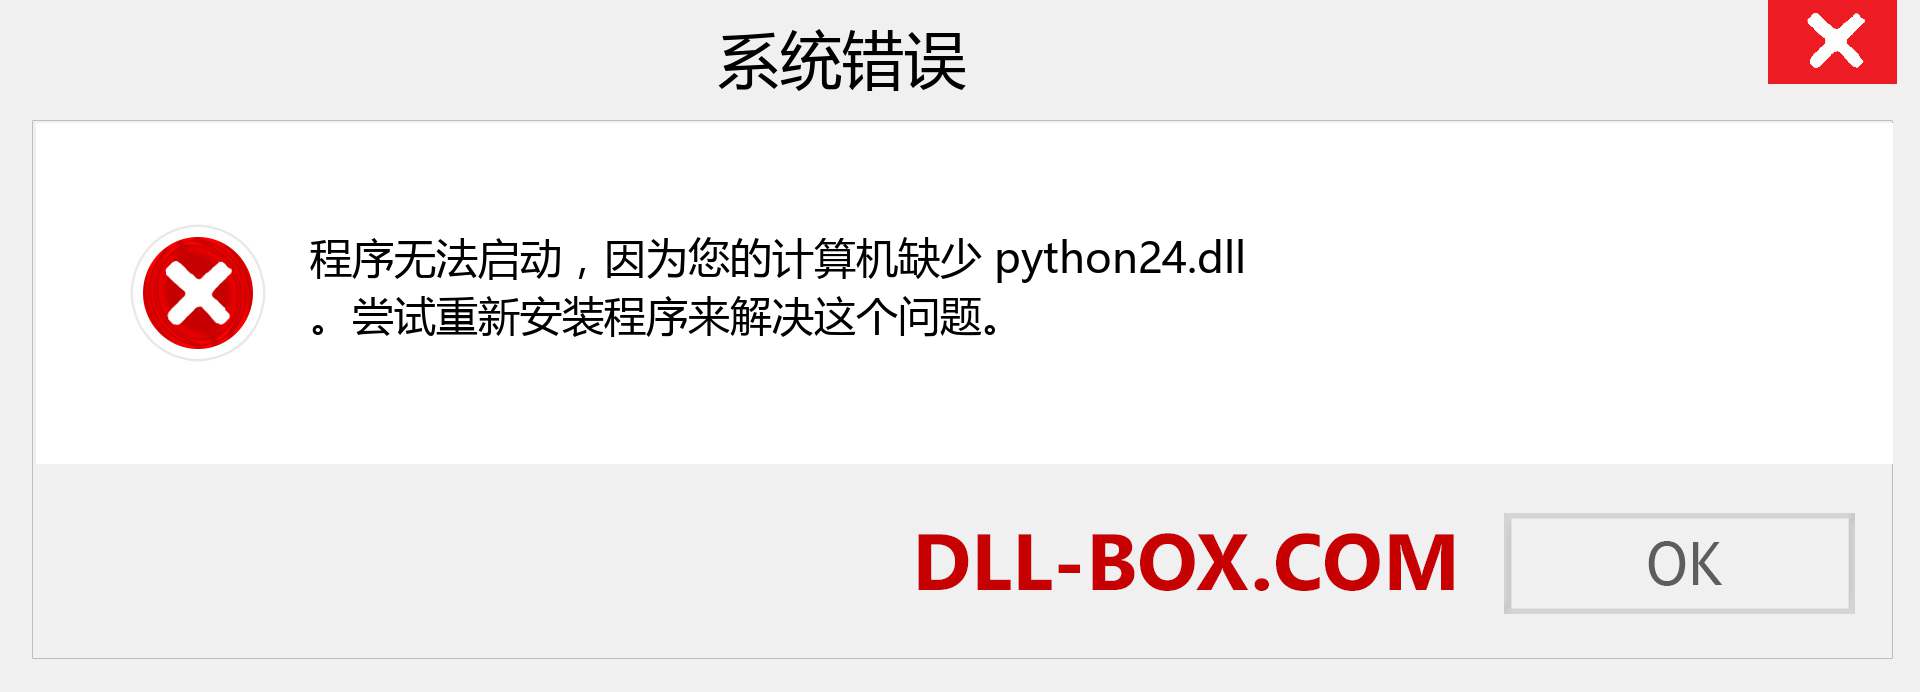 python24.dll 文件丢失？。 适用于 Windows 7、8、10 的下载 - 修复 Windows、照片、图像上的 python24 dll 丢失错误